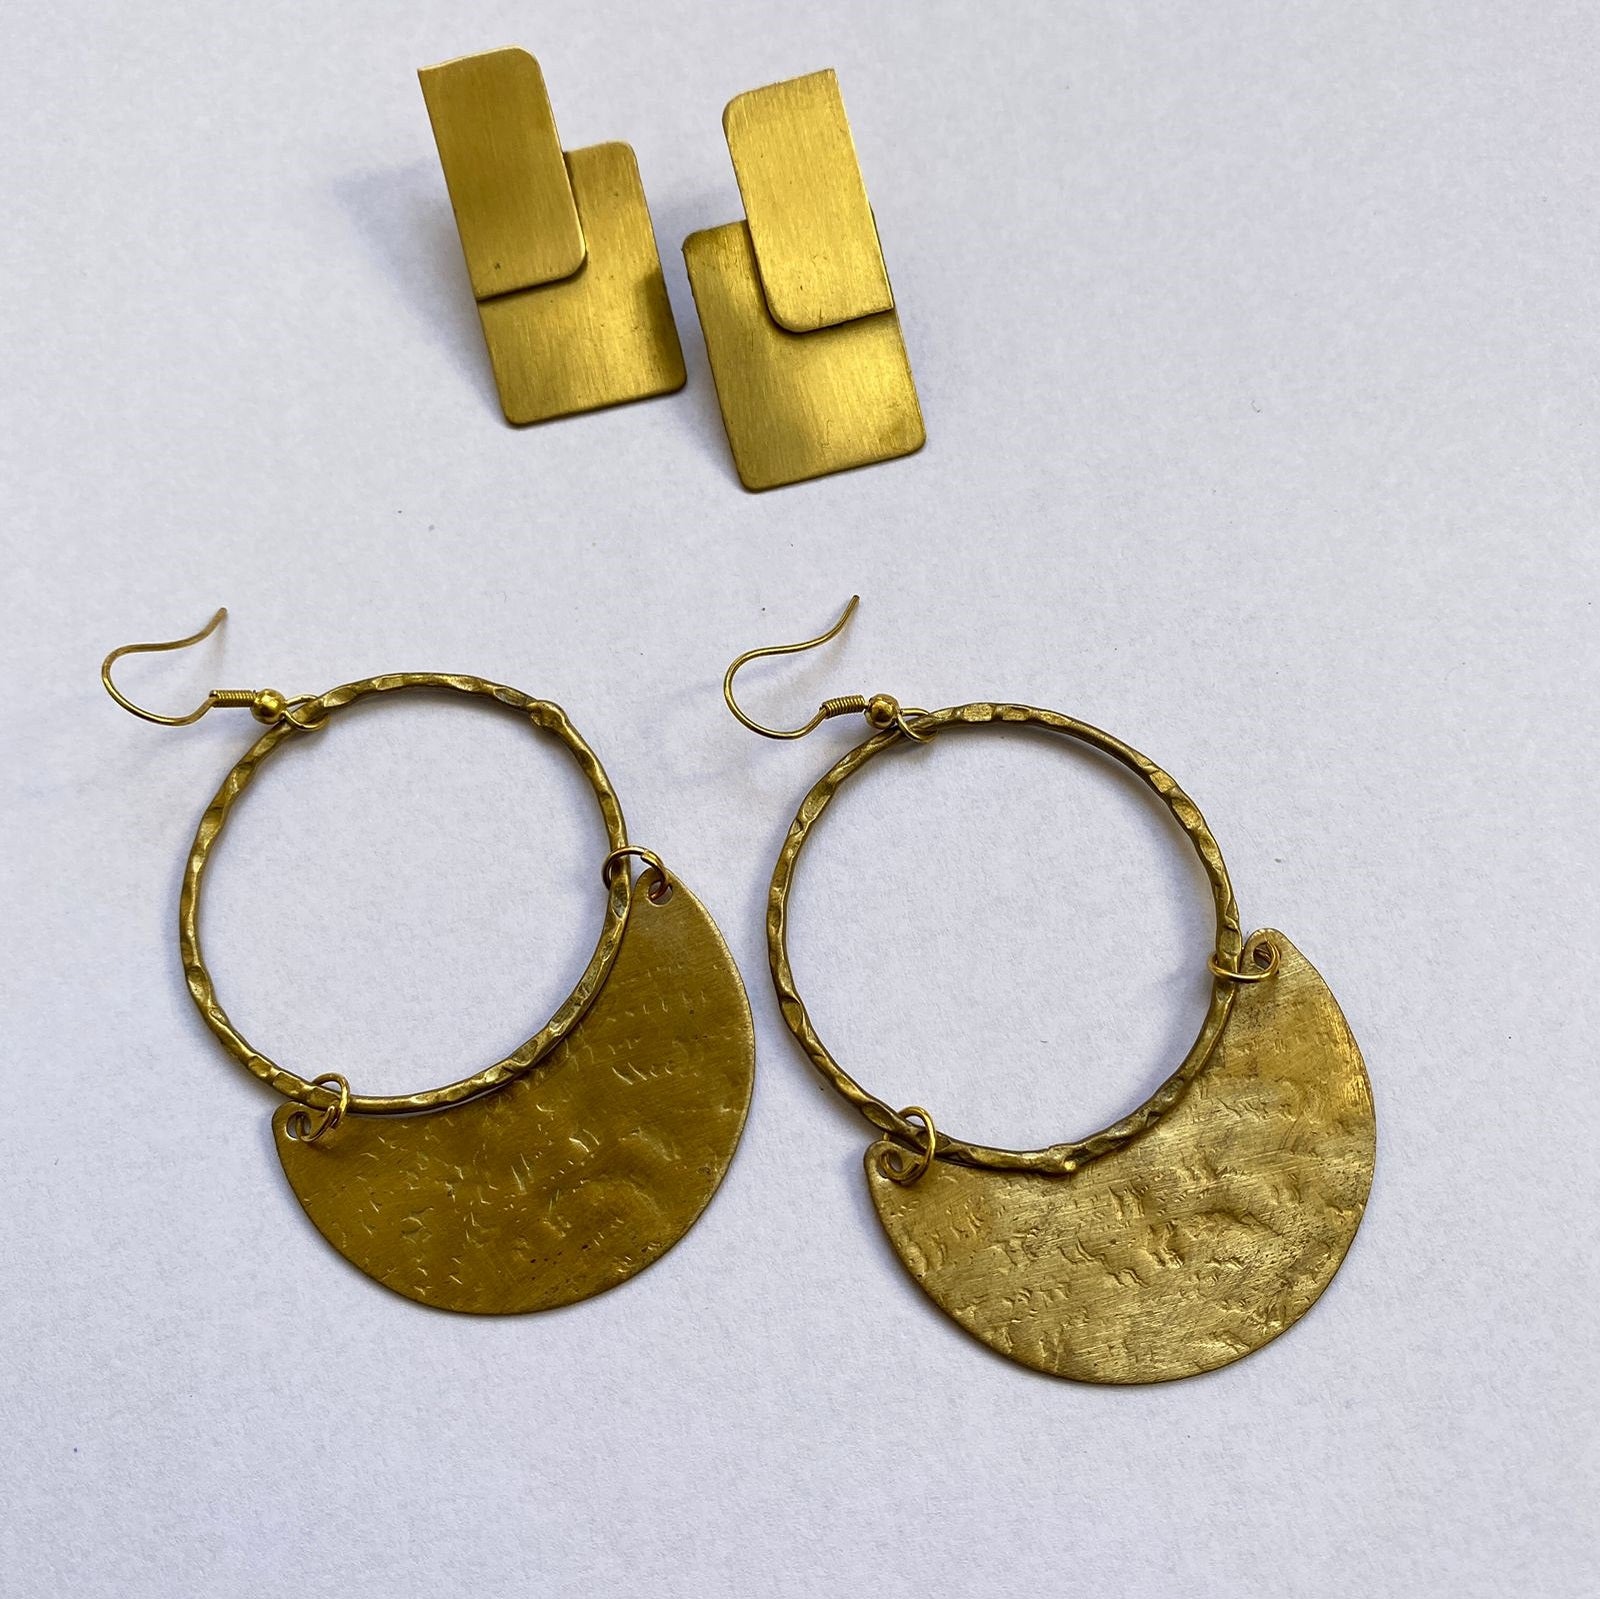 Brass Charm Earring : Two